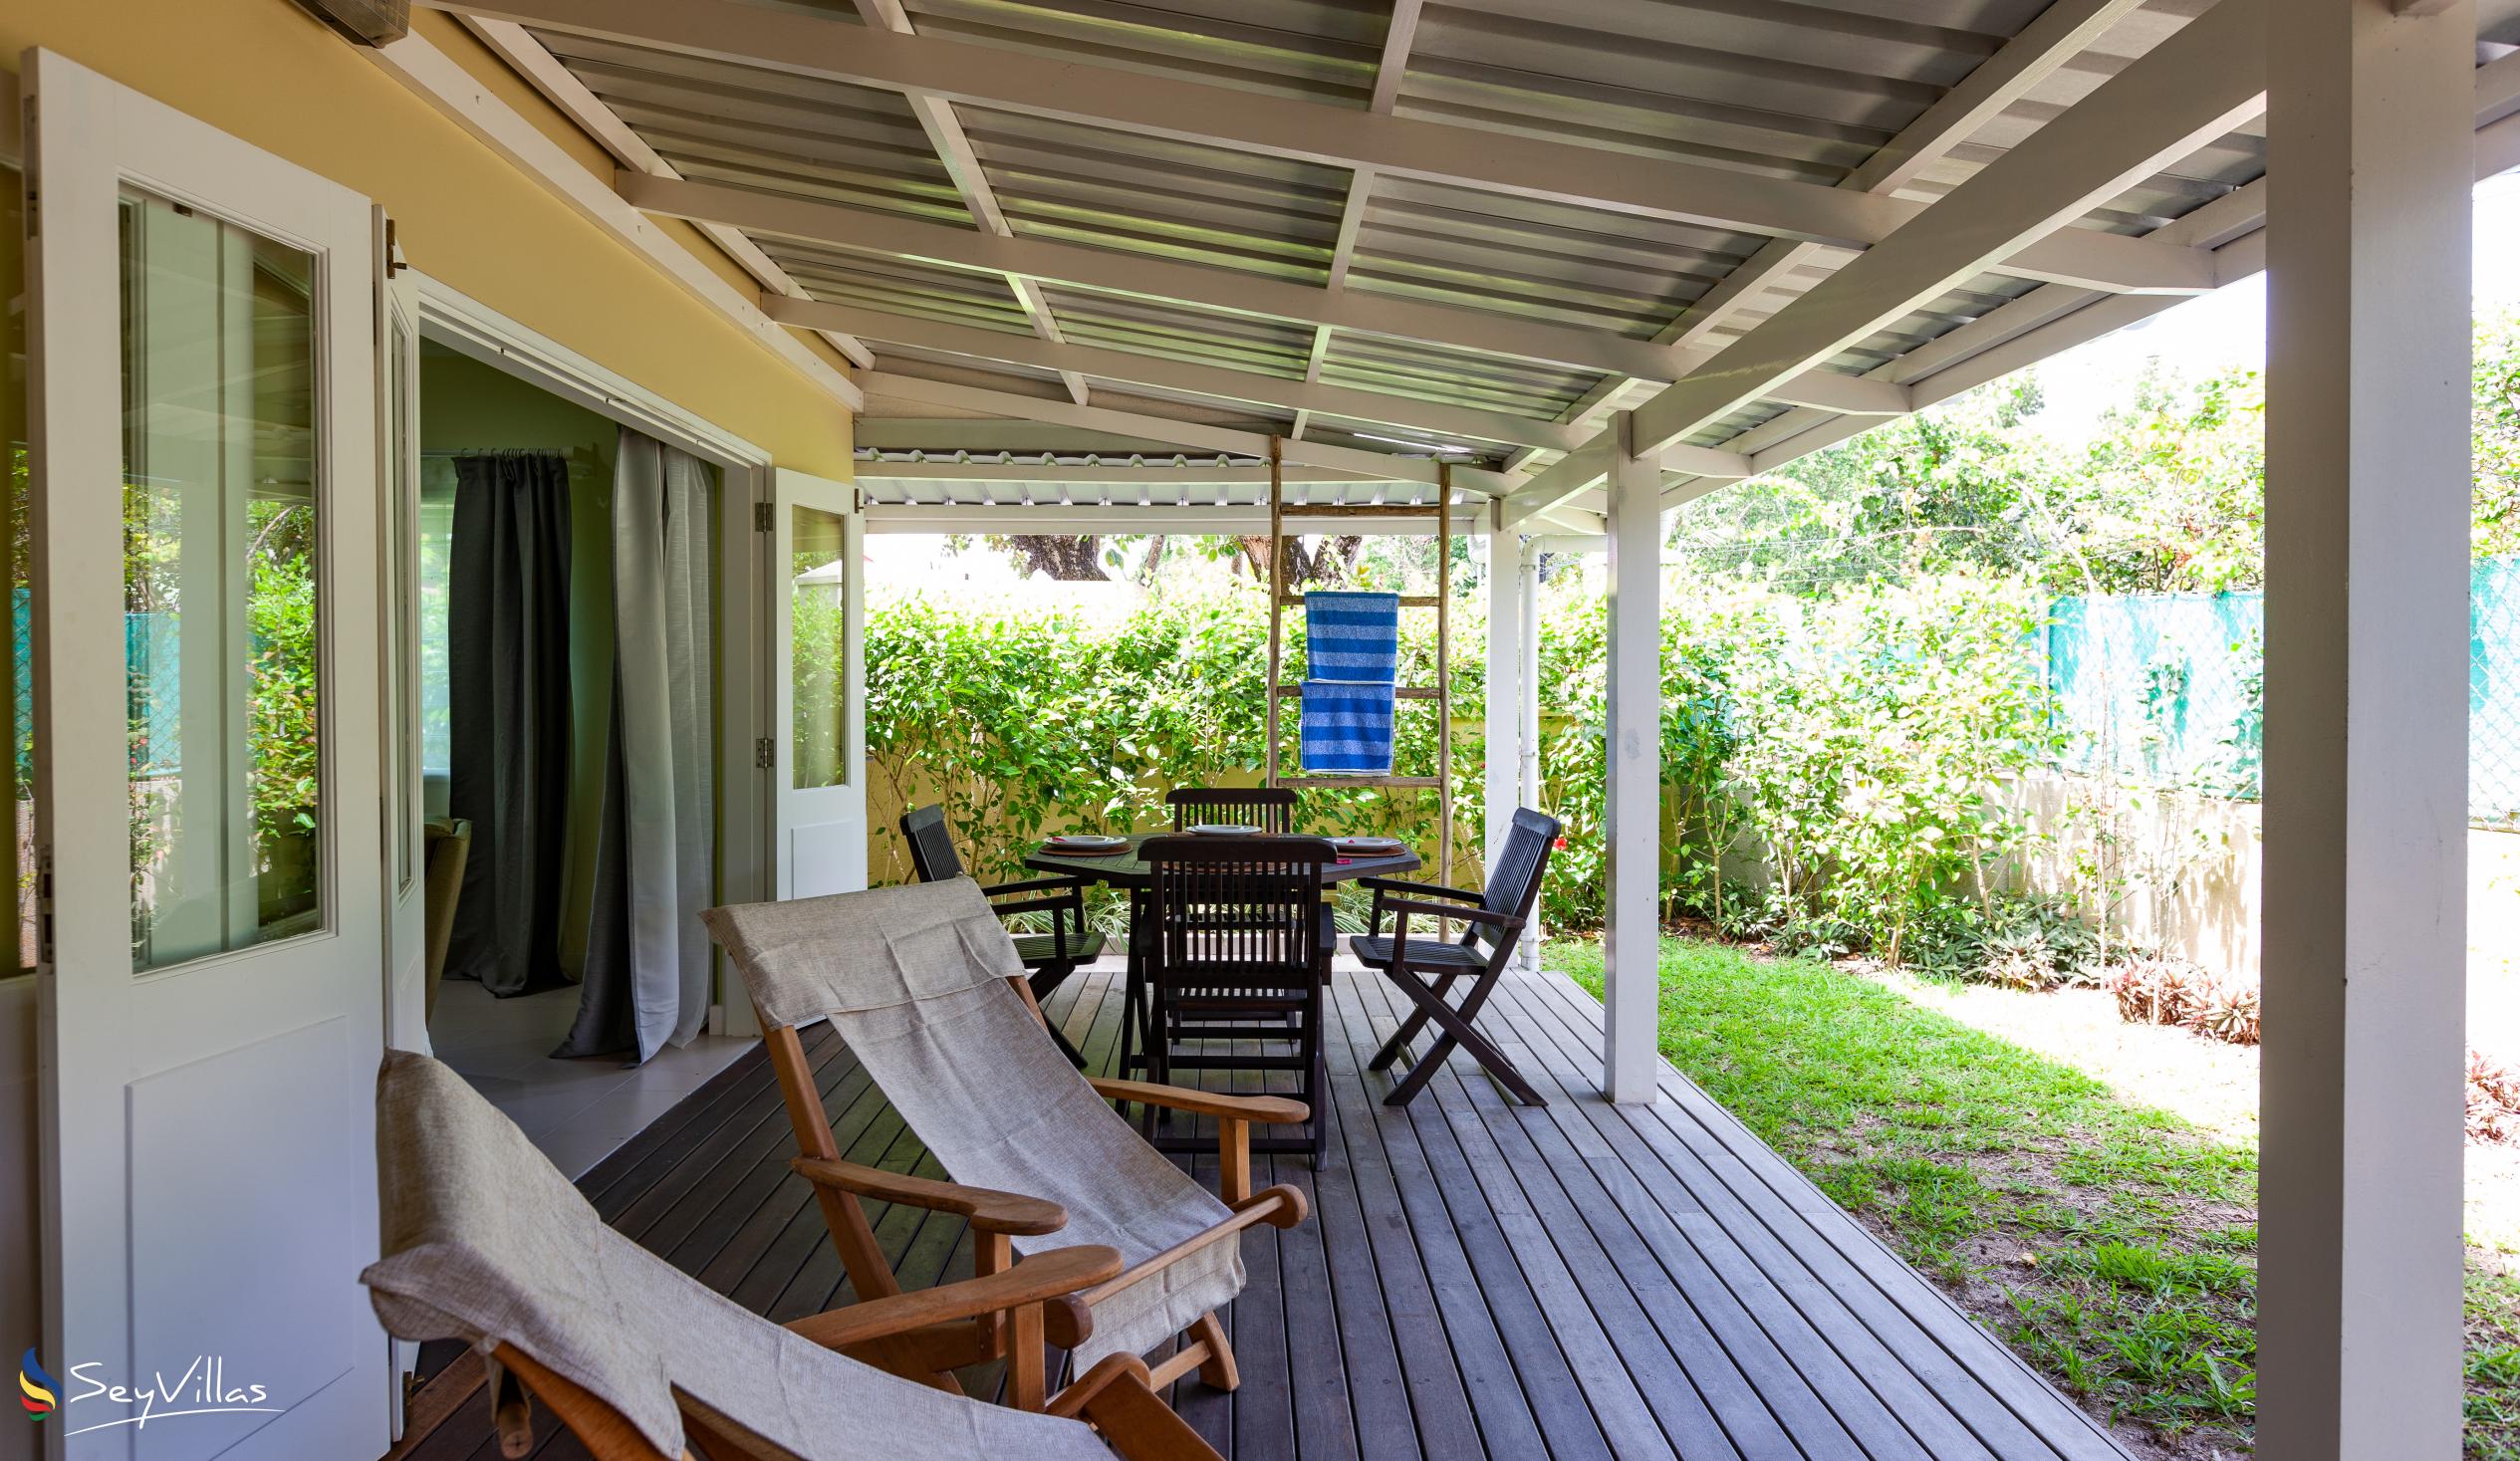 Foto 41: Residence Praslinoise - Familienappartement mit 2 Schlafzimmern (EG) - Praslin (Seychellen)